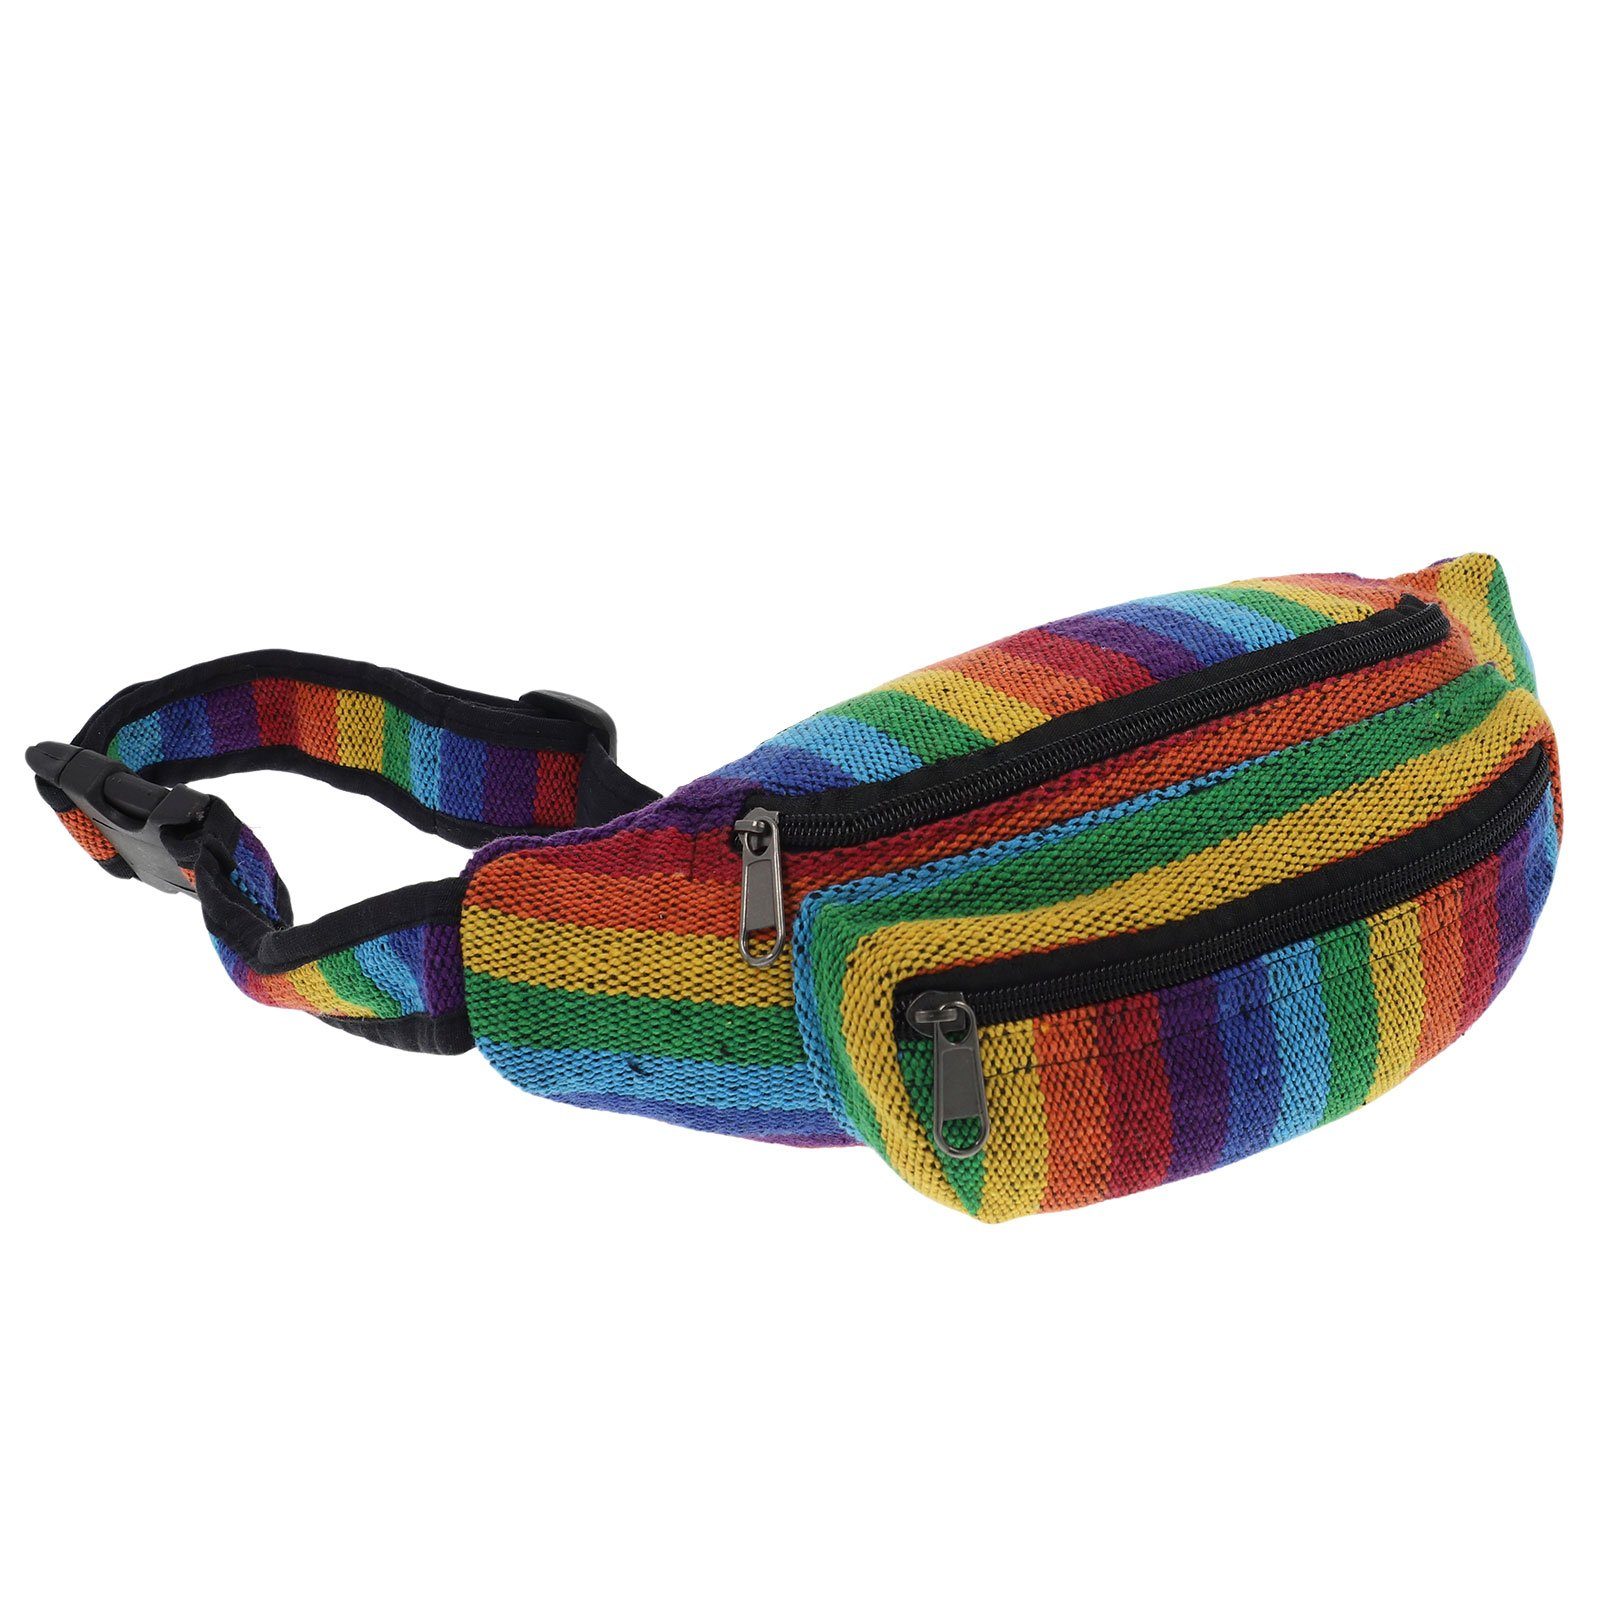 KUNST UND MAGIE Bauchtasche Bauchtasche Gürteltasche Bauchgurt Festivaltasche Hüfttasche Hippie Rainbow